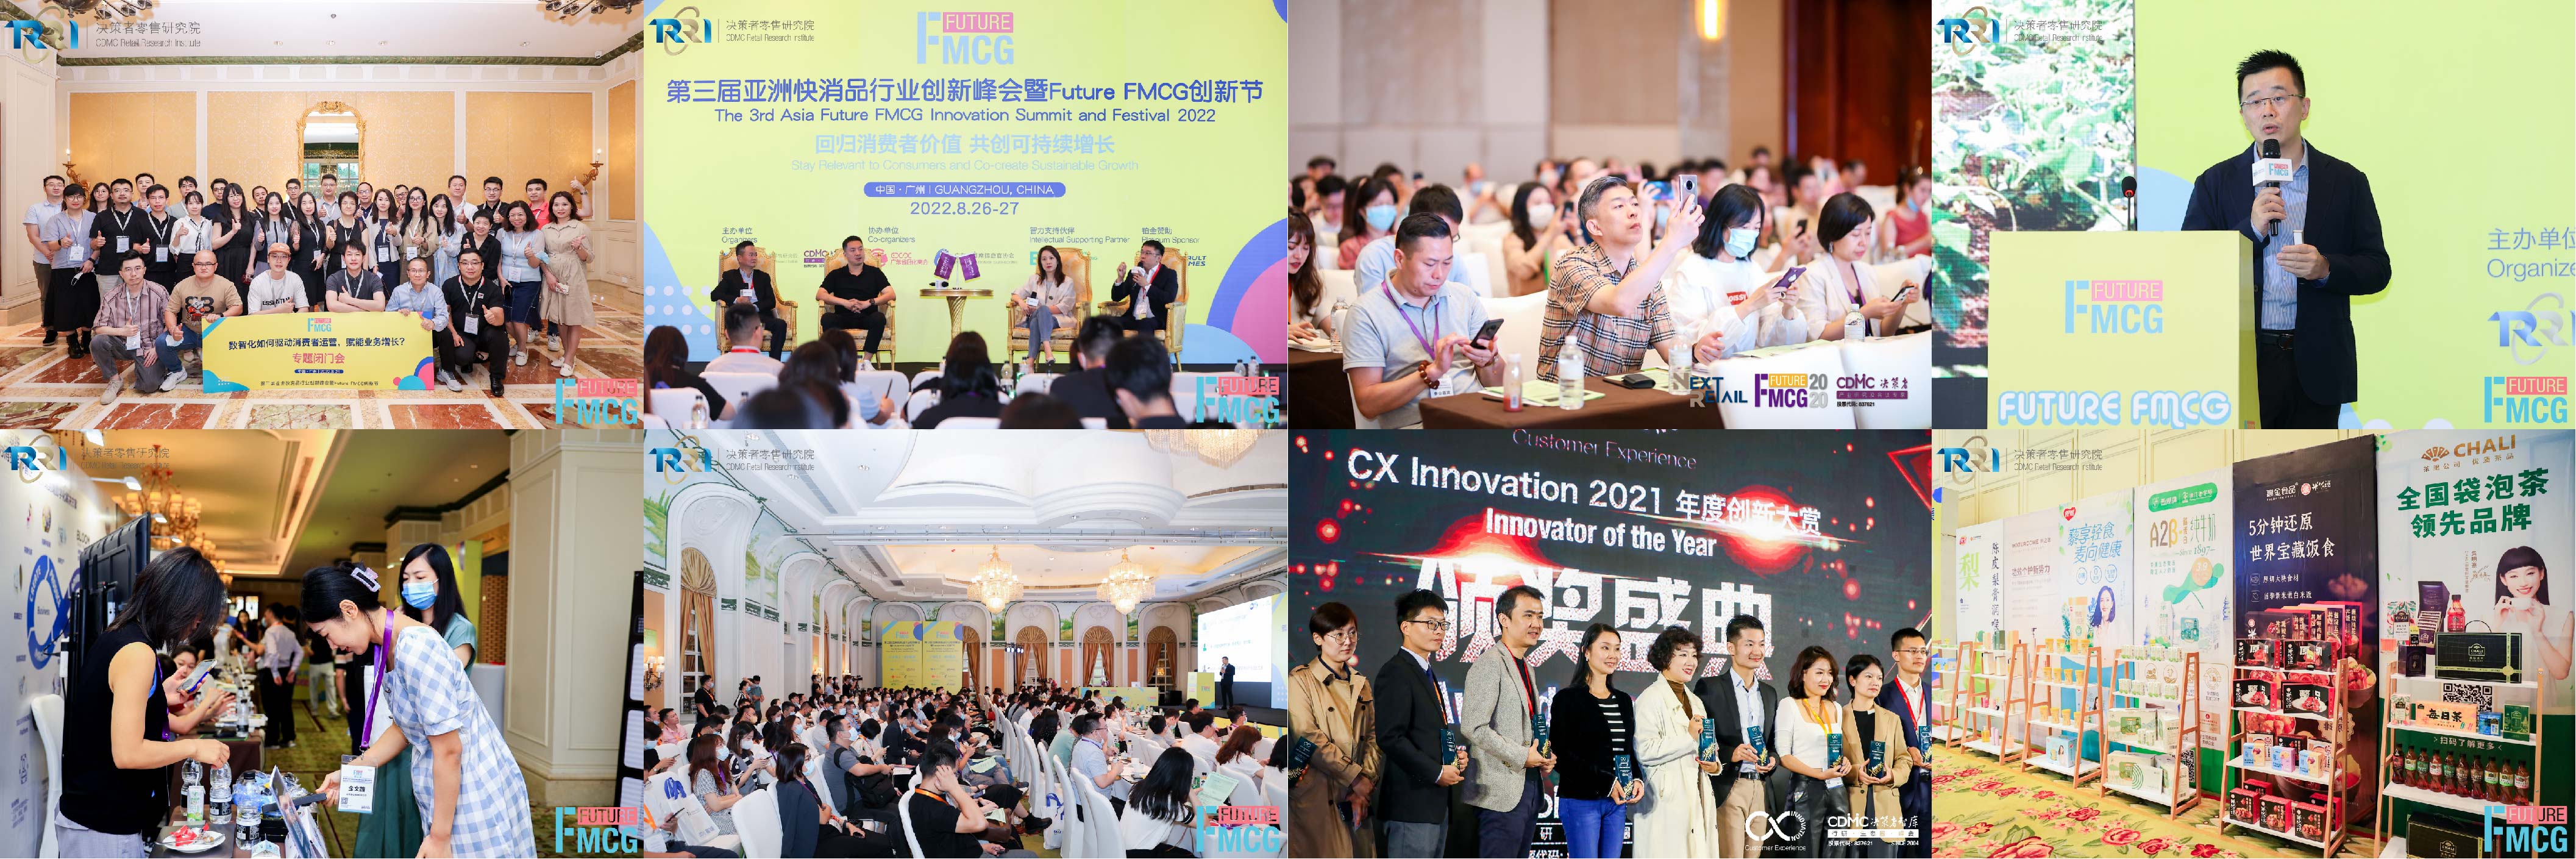 2023第四届亚洲快消品行业创新峰会暨Futuer FMCG创新节